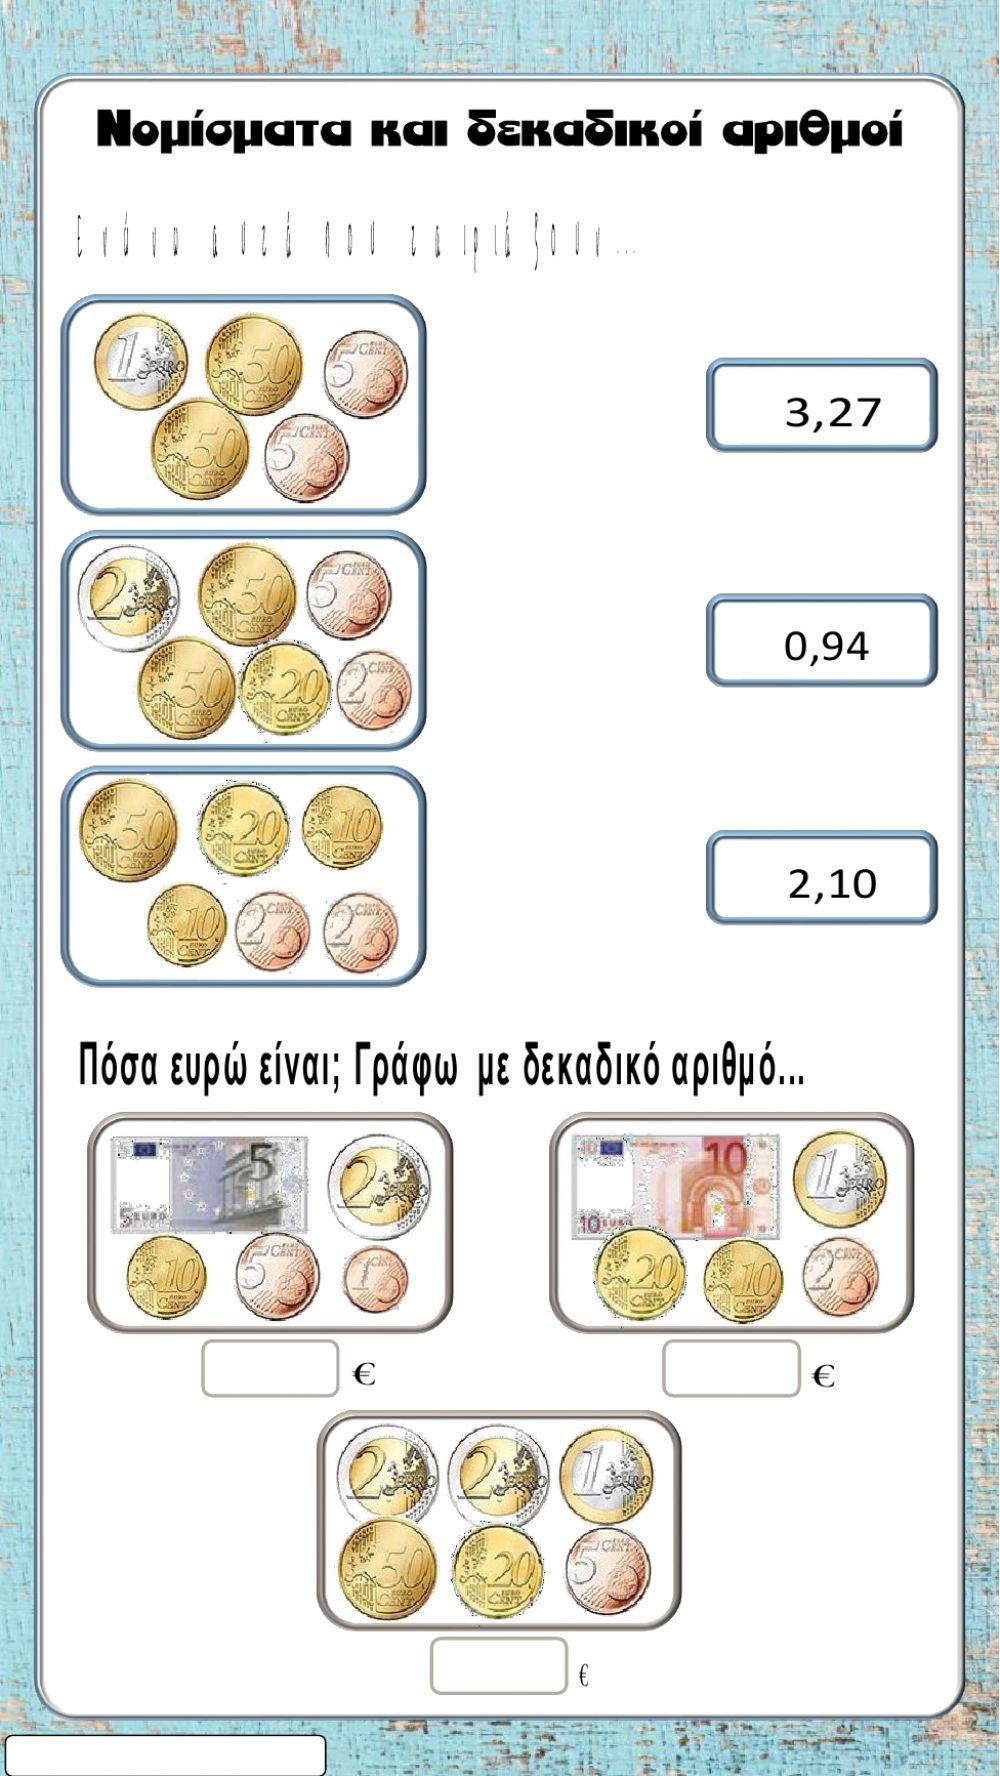 Νομίσματα-Δεκαδικοί αριθμοί